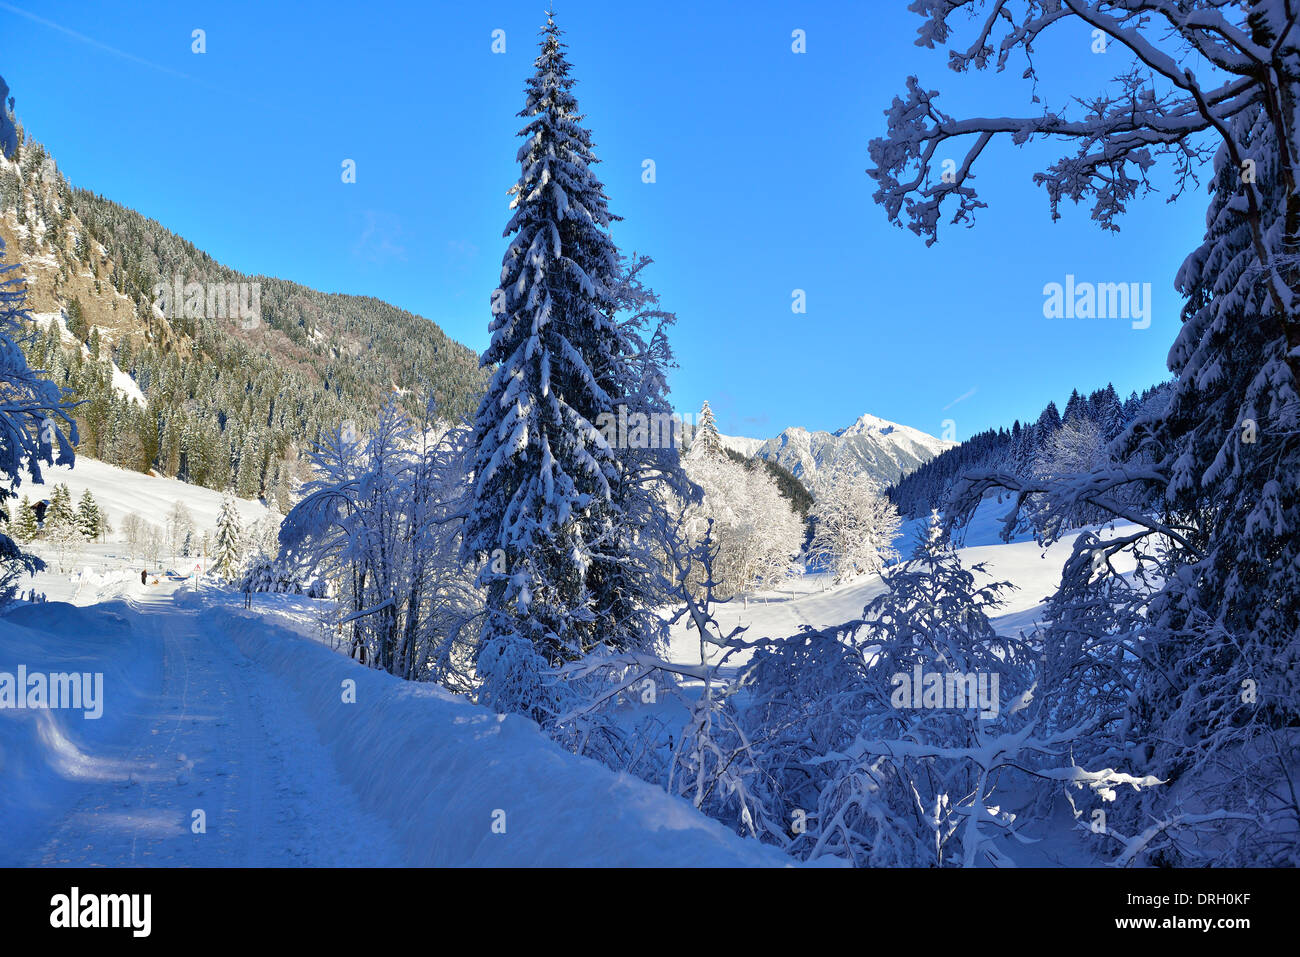 País de las maravillas invernal en valle Rohrmoos(Tiefenbach)justo en las afueras de Oberstdorf im Allgäu, Alemania Foto de stock